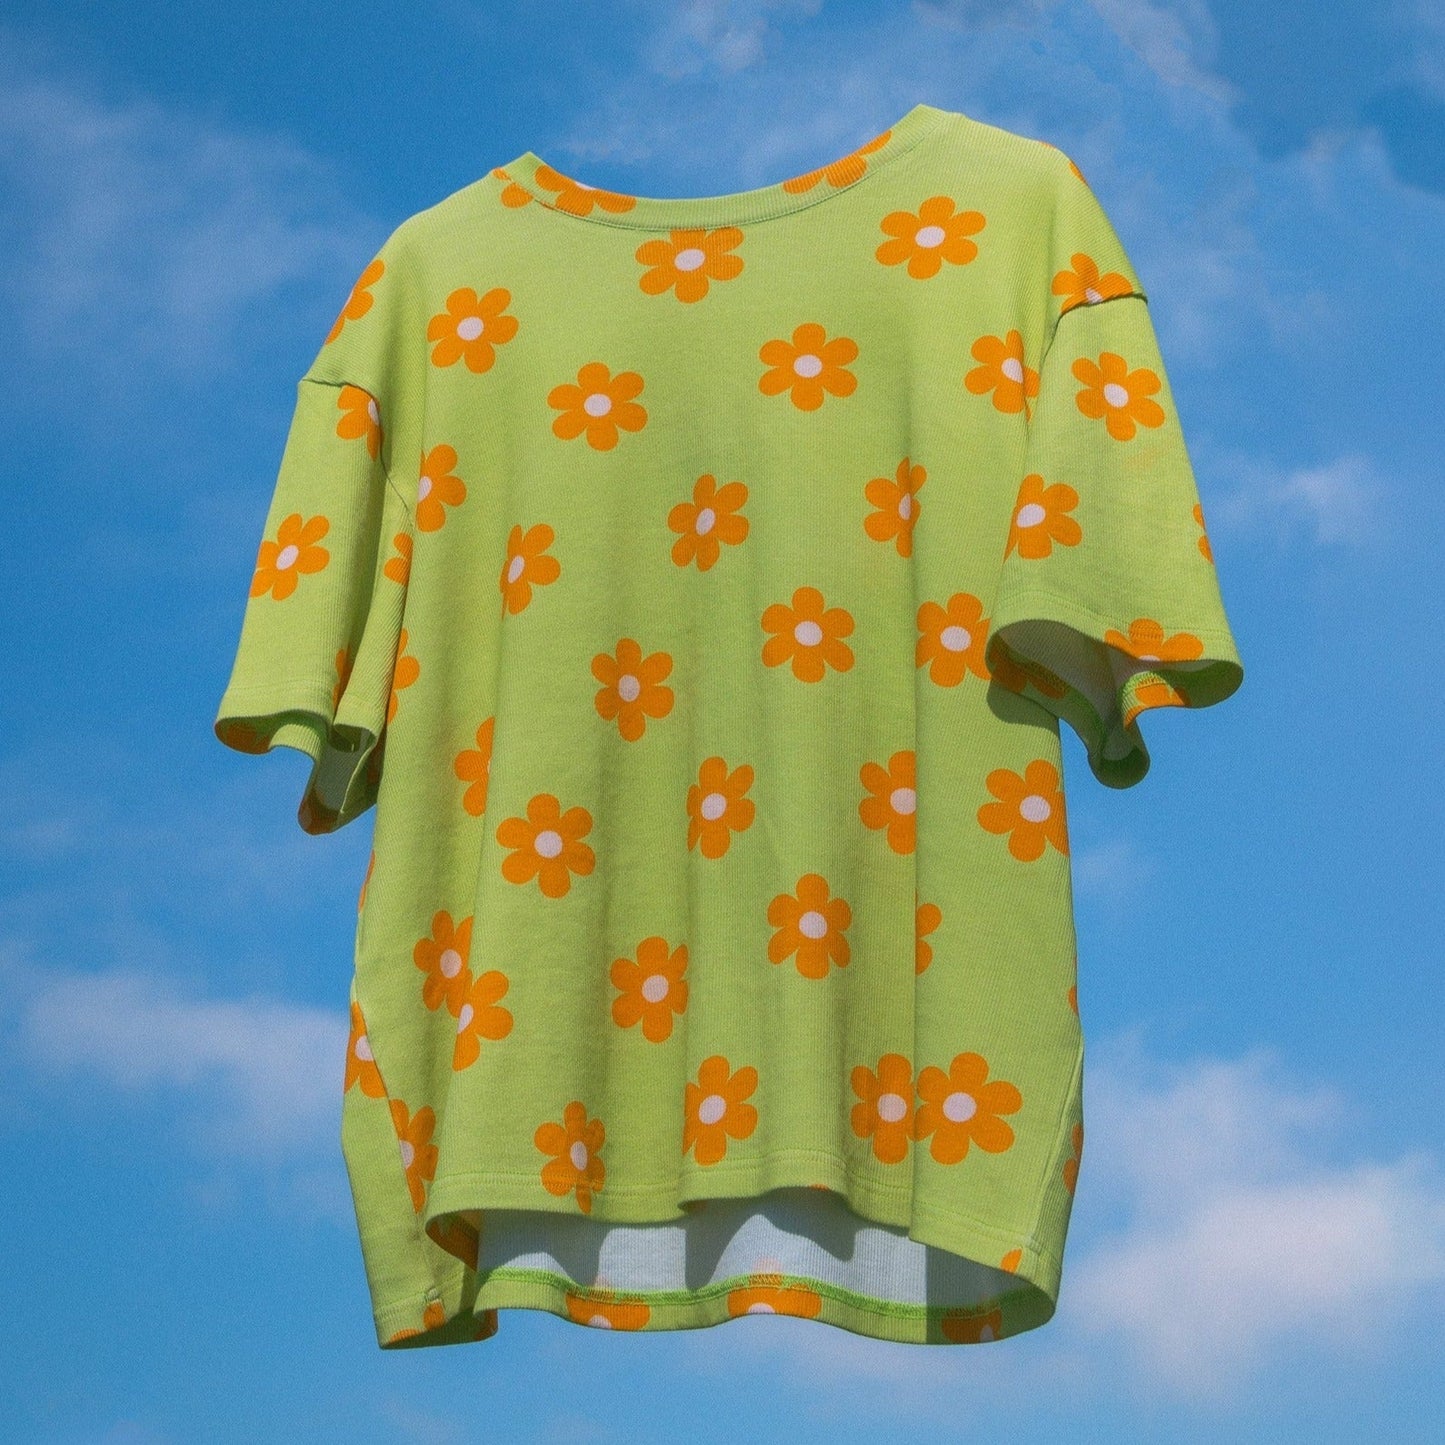 *PRE-ORDER* Flower Power Human Oversized T-shirt Sunbean 